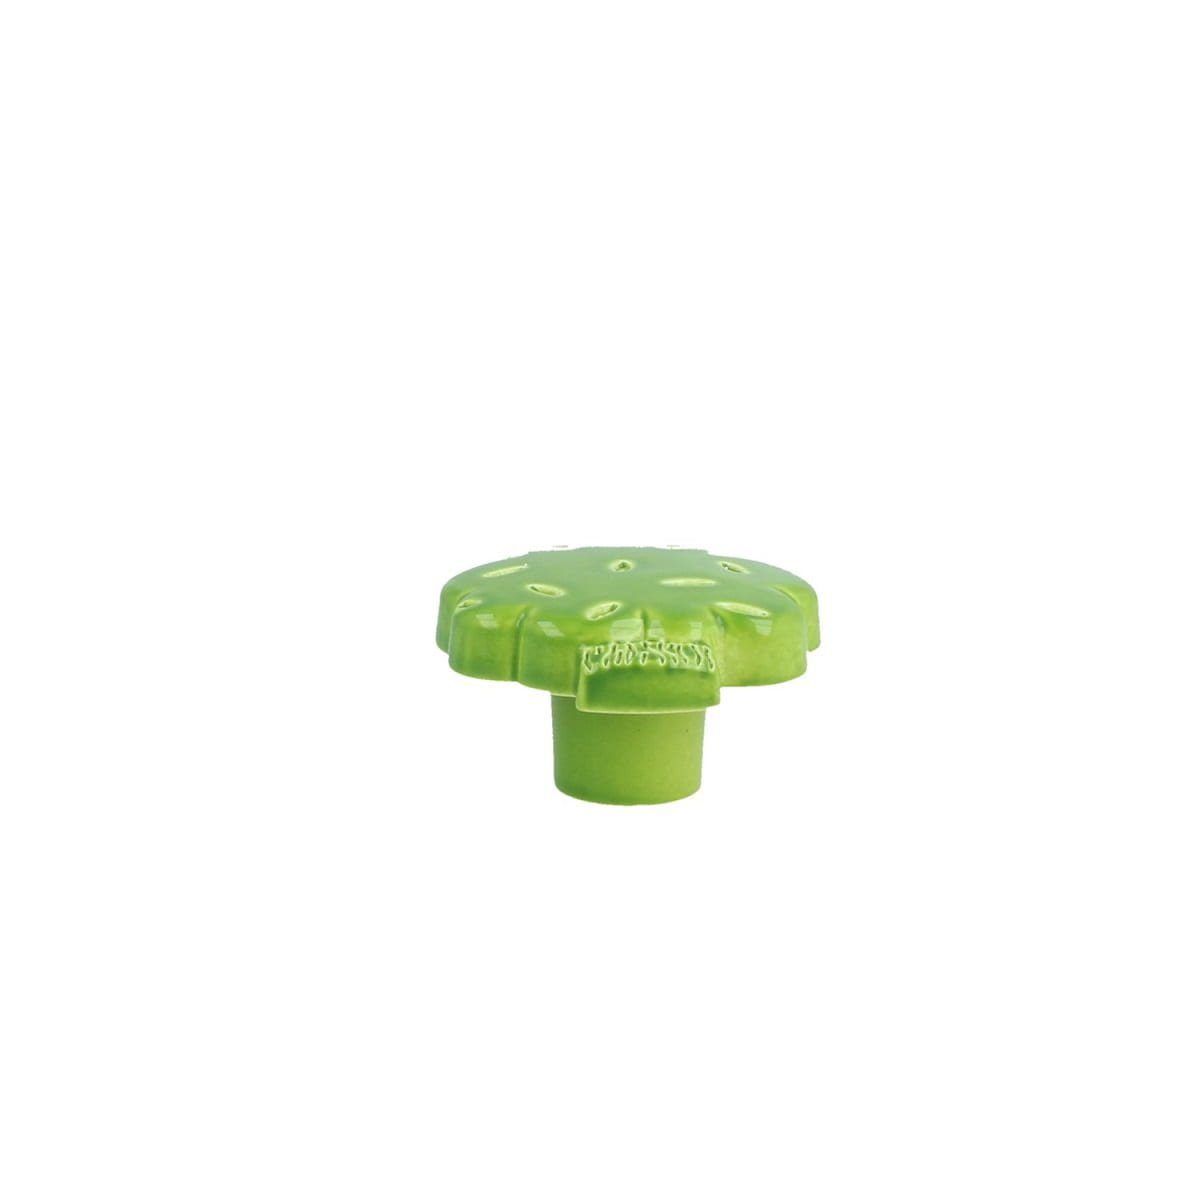 Modell Türbeschlag Kommodenk MS Möbelknopf Grüner Schrankknopf Kinderzimmerknopf Beschläge Baum